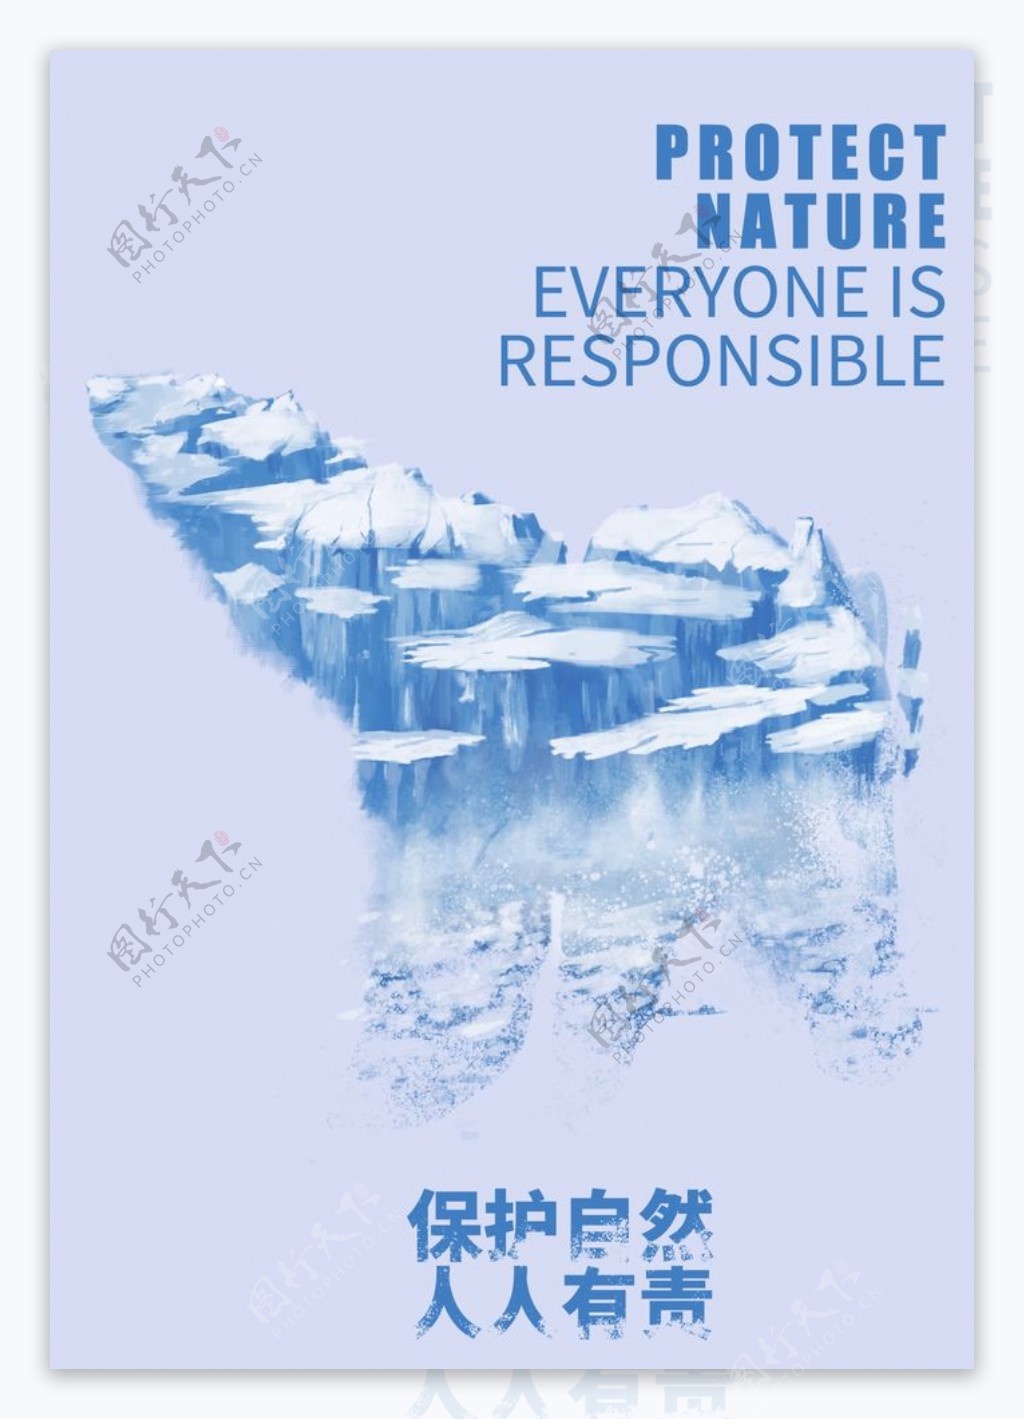 公益海报保护自然雪山融化